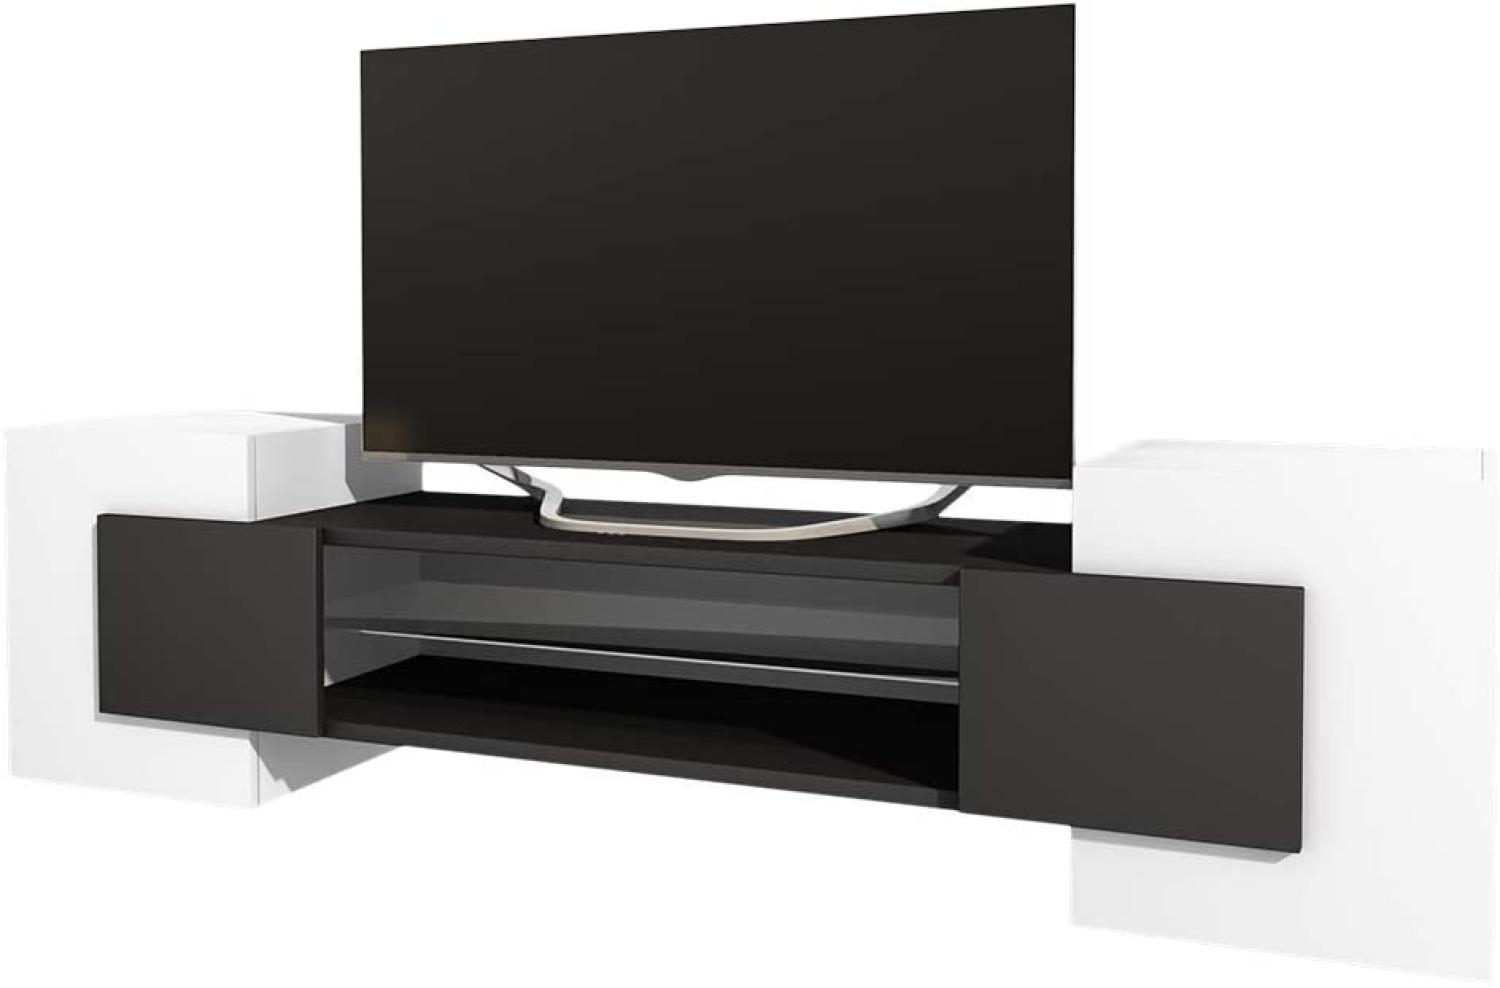 Selsey Gaelin - TV-Lowboard / Fernsehschrank in Weiß / Schwarz mit offenen Fächern und blickdichtem Stauraum, stehend, 160 cm breit Bild 1